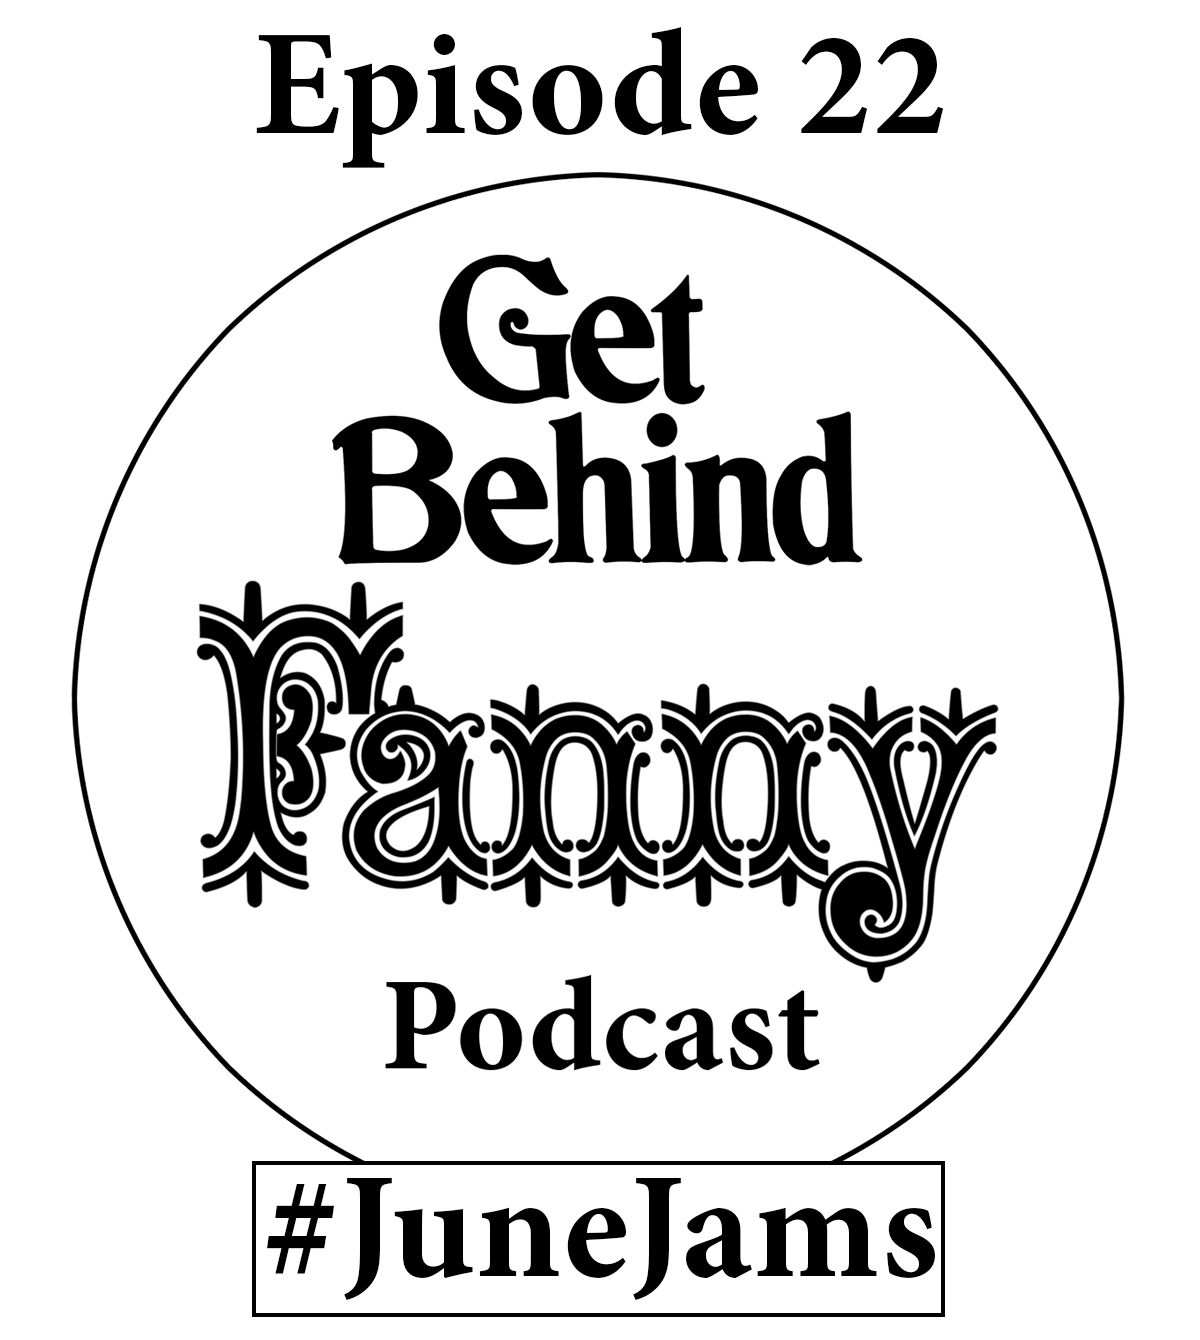 Get Behind Fanny: Episode 22